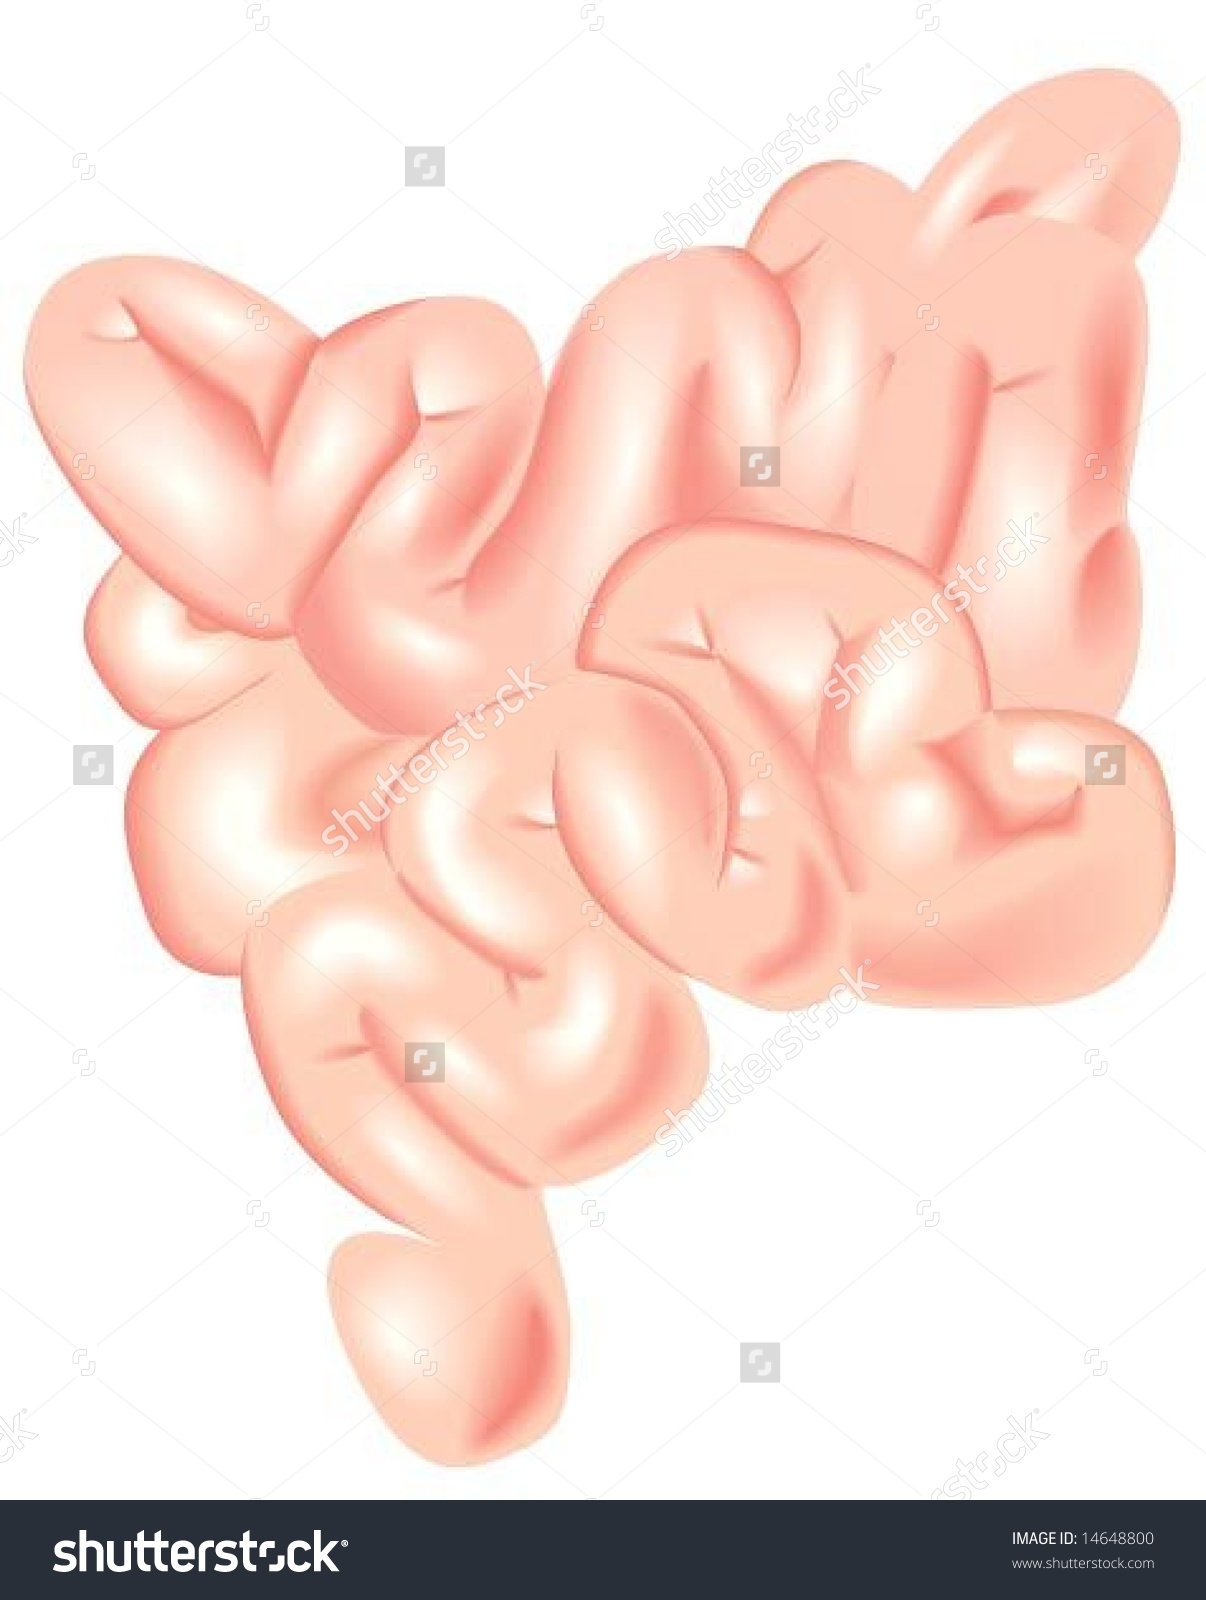 Small Intestine - Vector